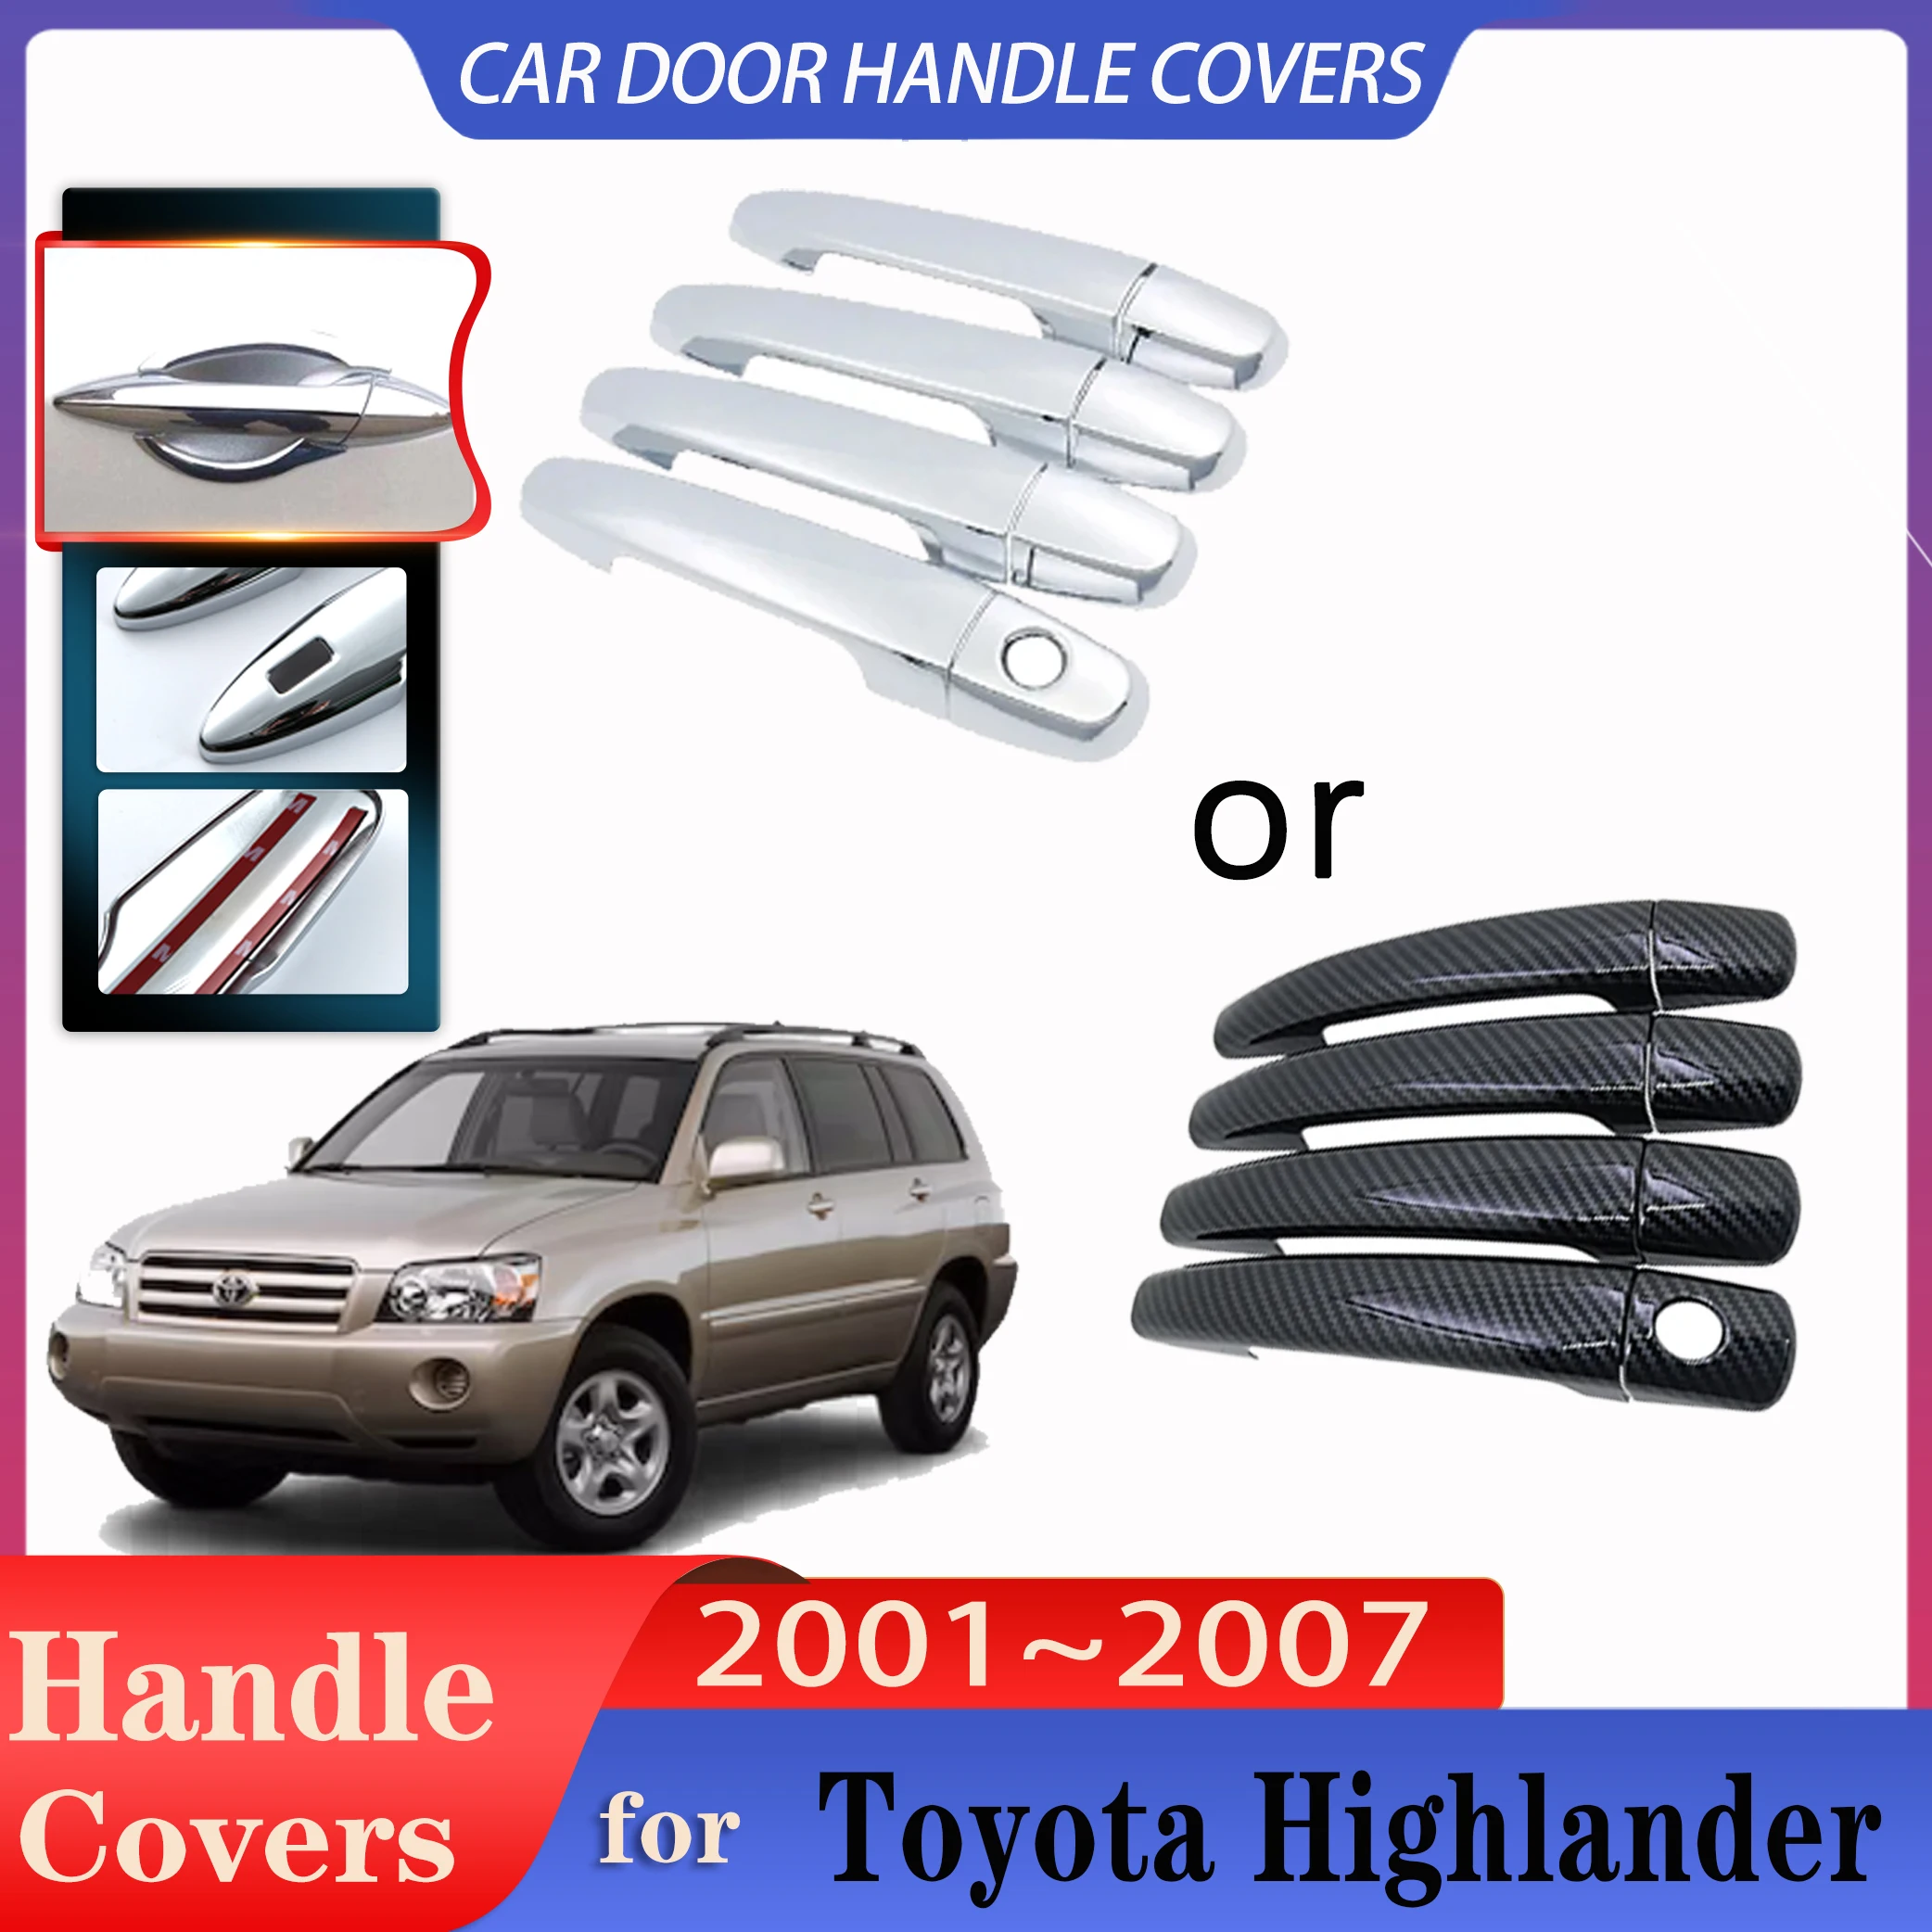 

Чехлы на дверные ручки для Toyota Highlander Kluger 2001 ~ 2007, имитация ручек из углеродного волокна или хромированных дверных ручек, аксессуары